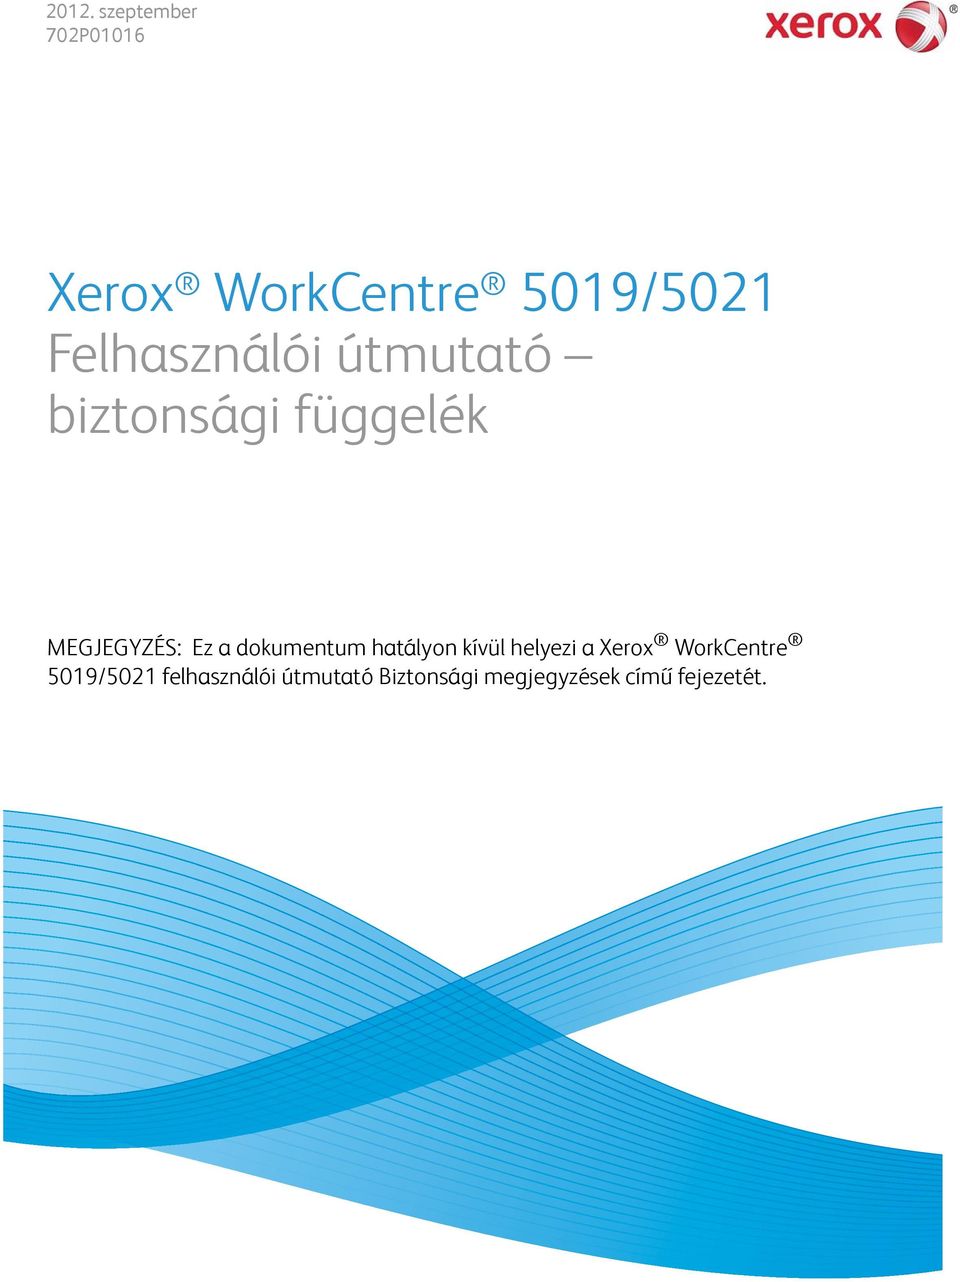 hatályon kívül helyezi a Xerox WorkCentre 5019/5021